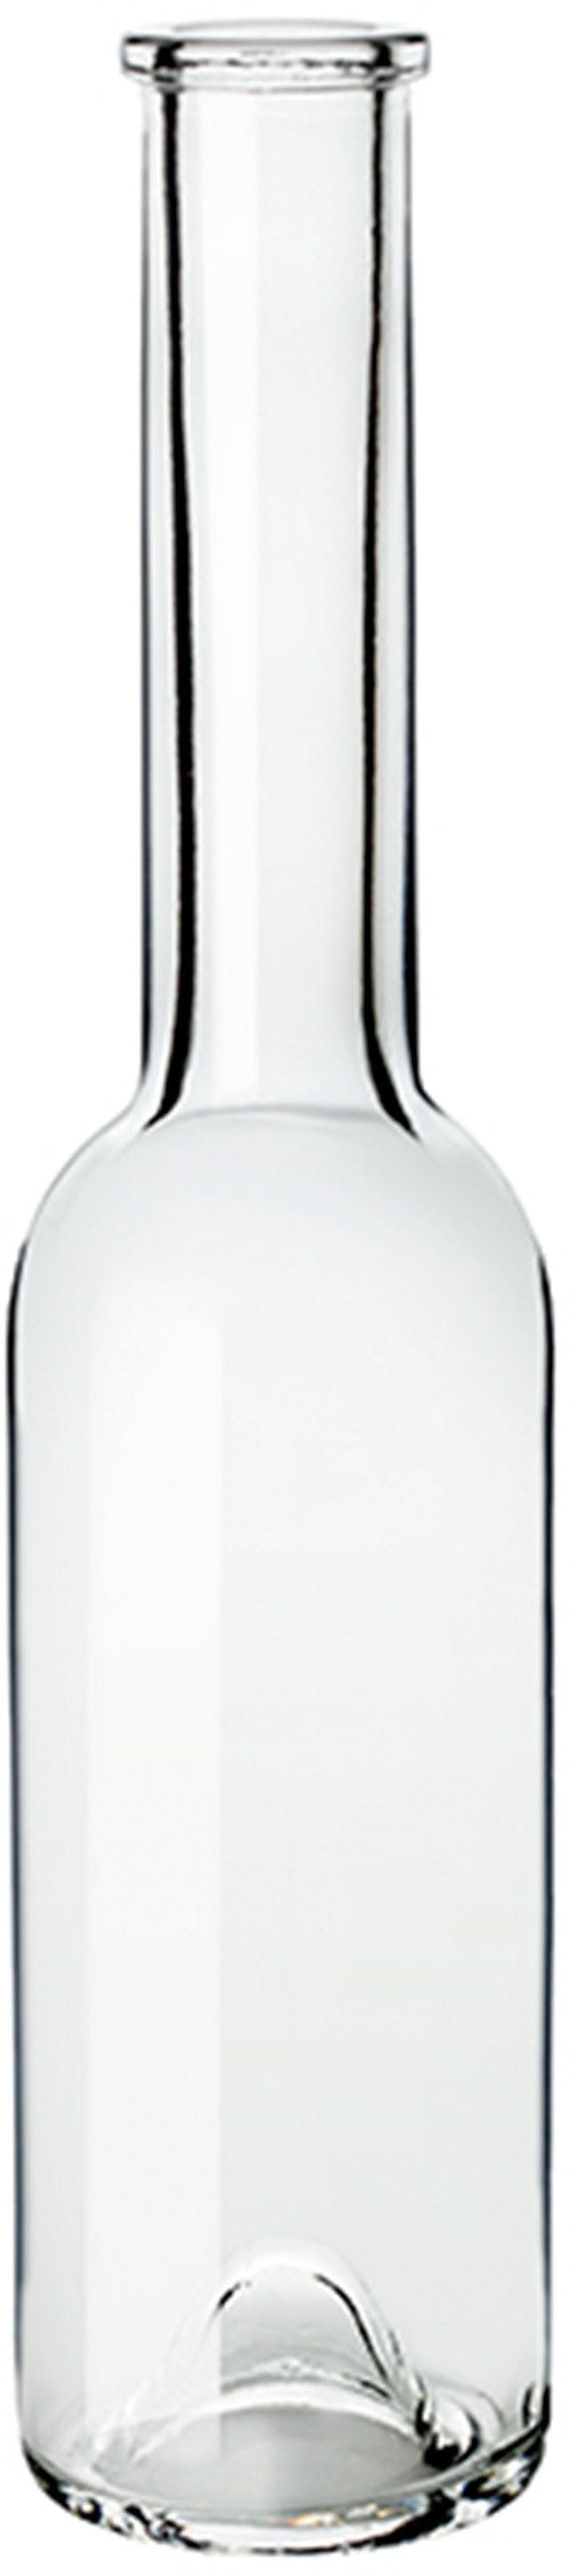 Flasche SINFONIA  OPERA 200 ml BG-Korken